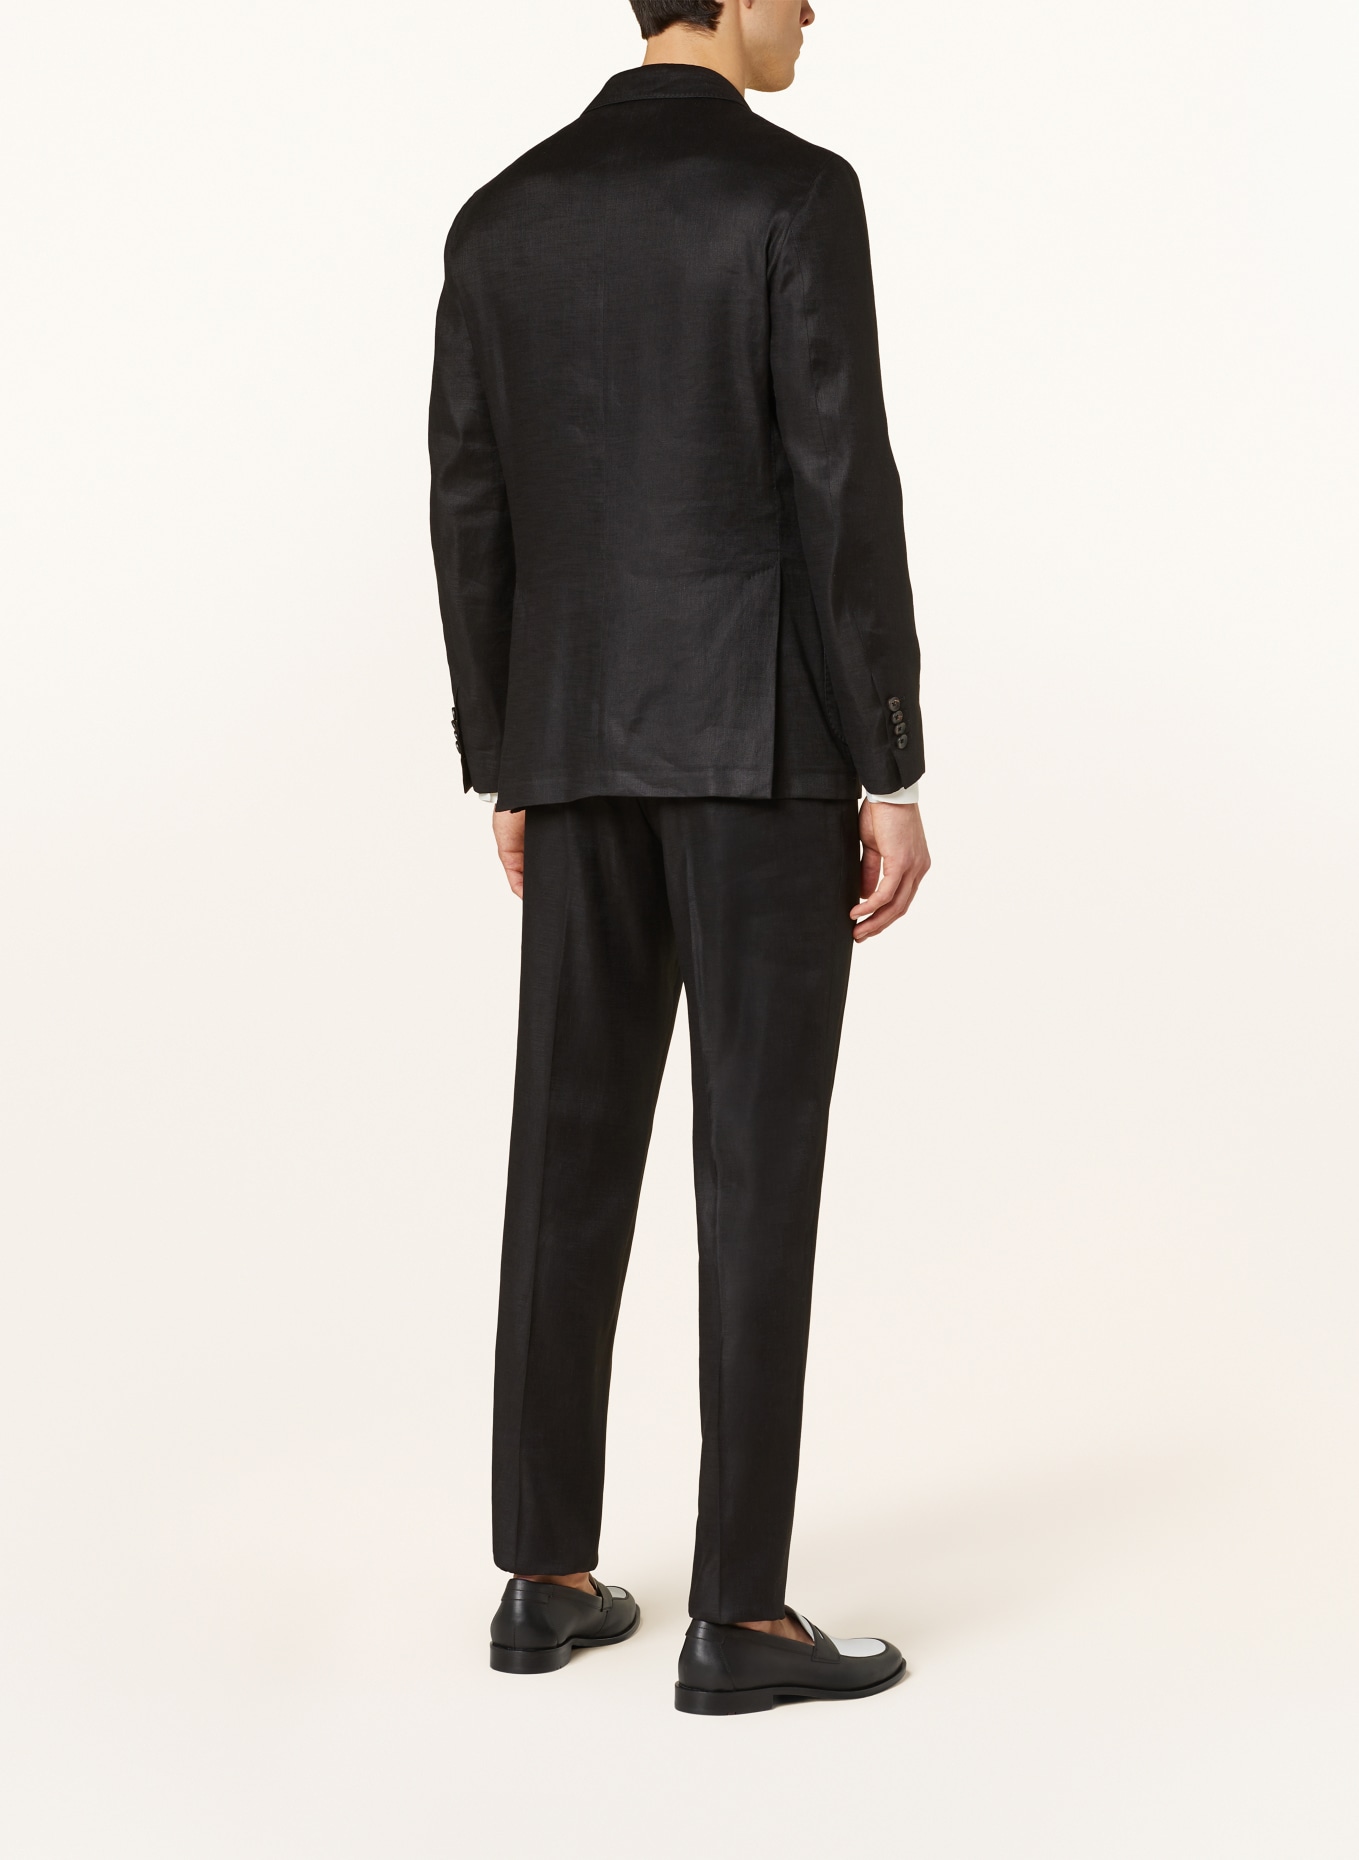 LARDINI Suit jacket regular fit with linen, Color: BLACK (Image 3)